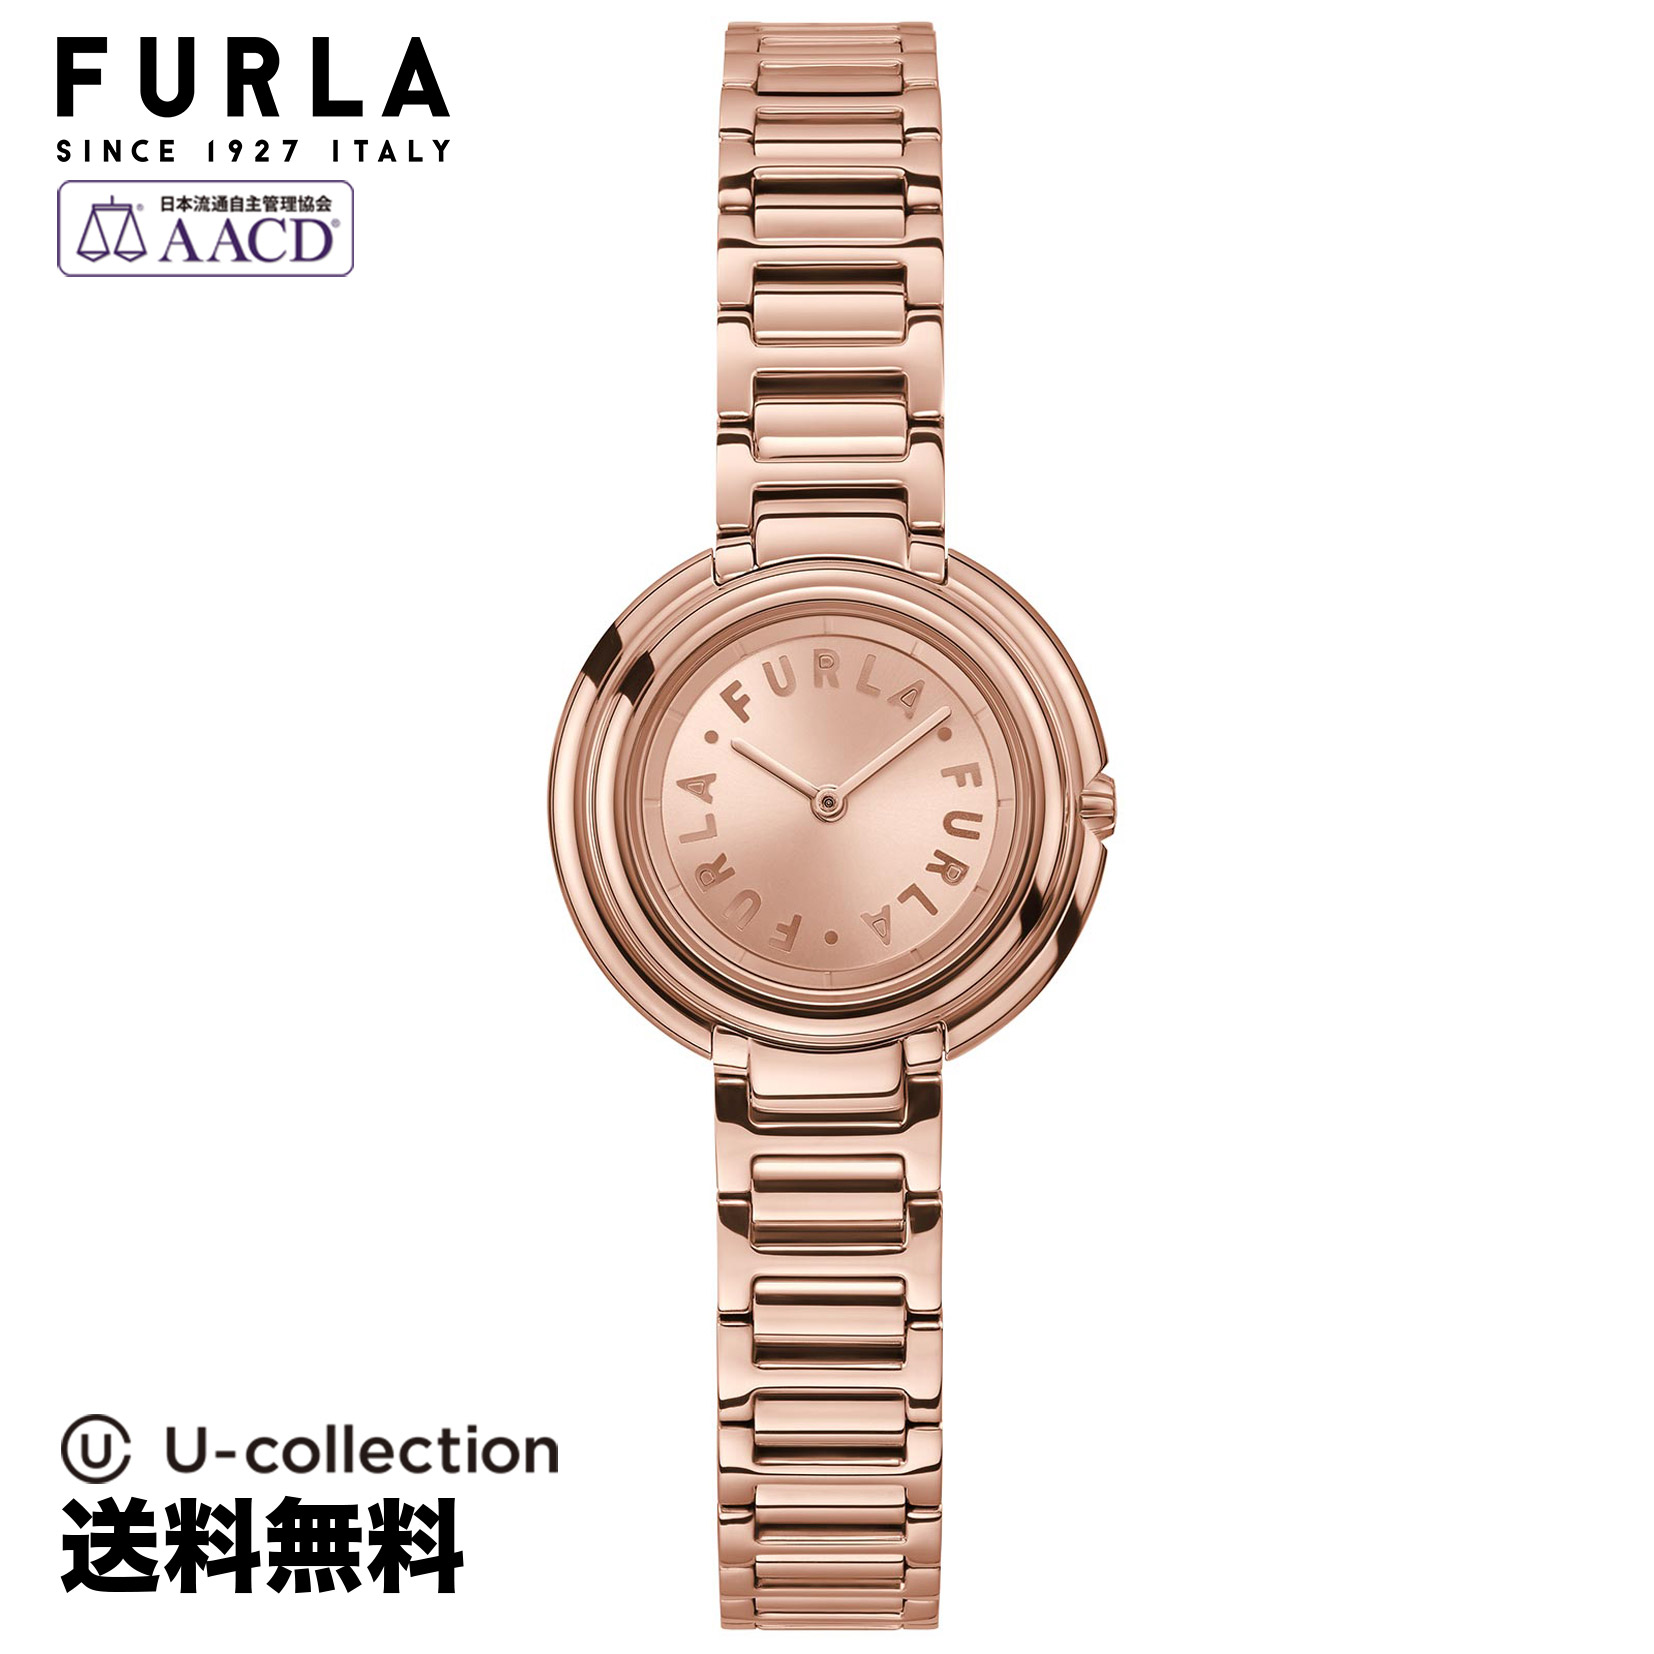 FURLA フルラ FURLA ICON SHAPE クォーツ レディース ピンクゴールド WW00031002L3 時計 腕時計 高級腕時計 ブランド